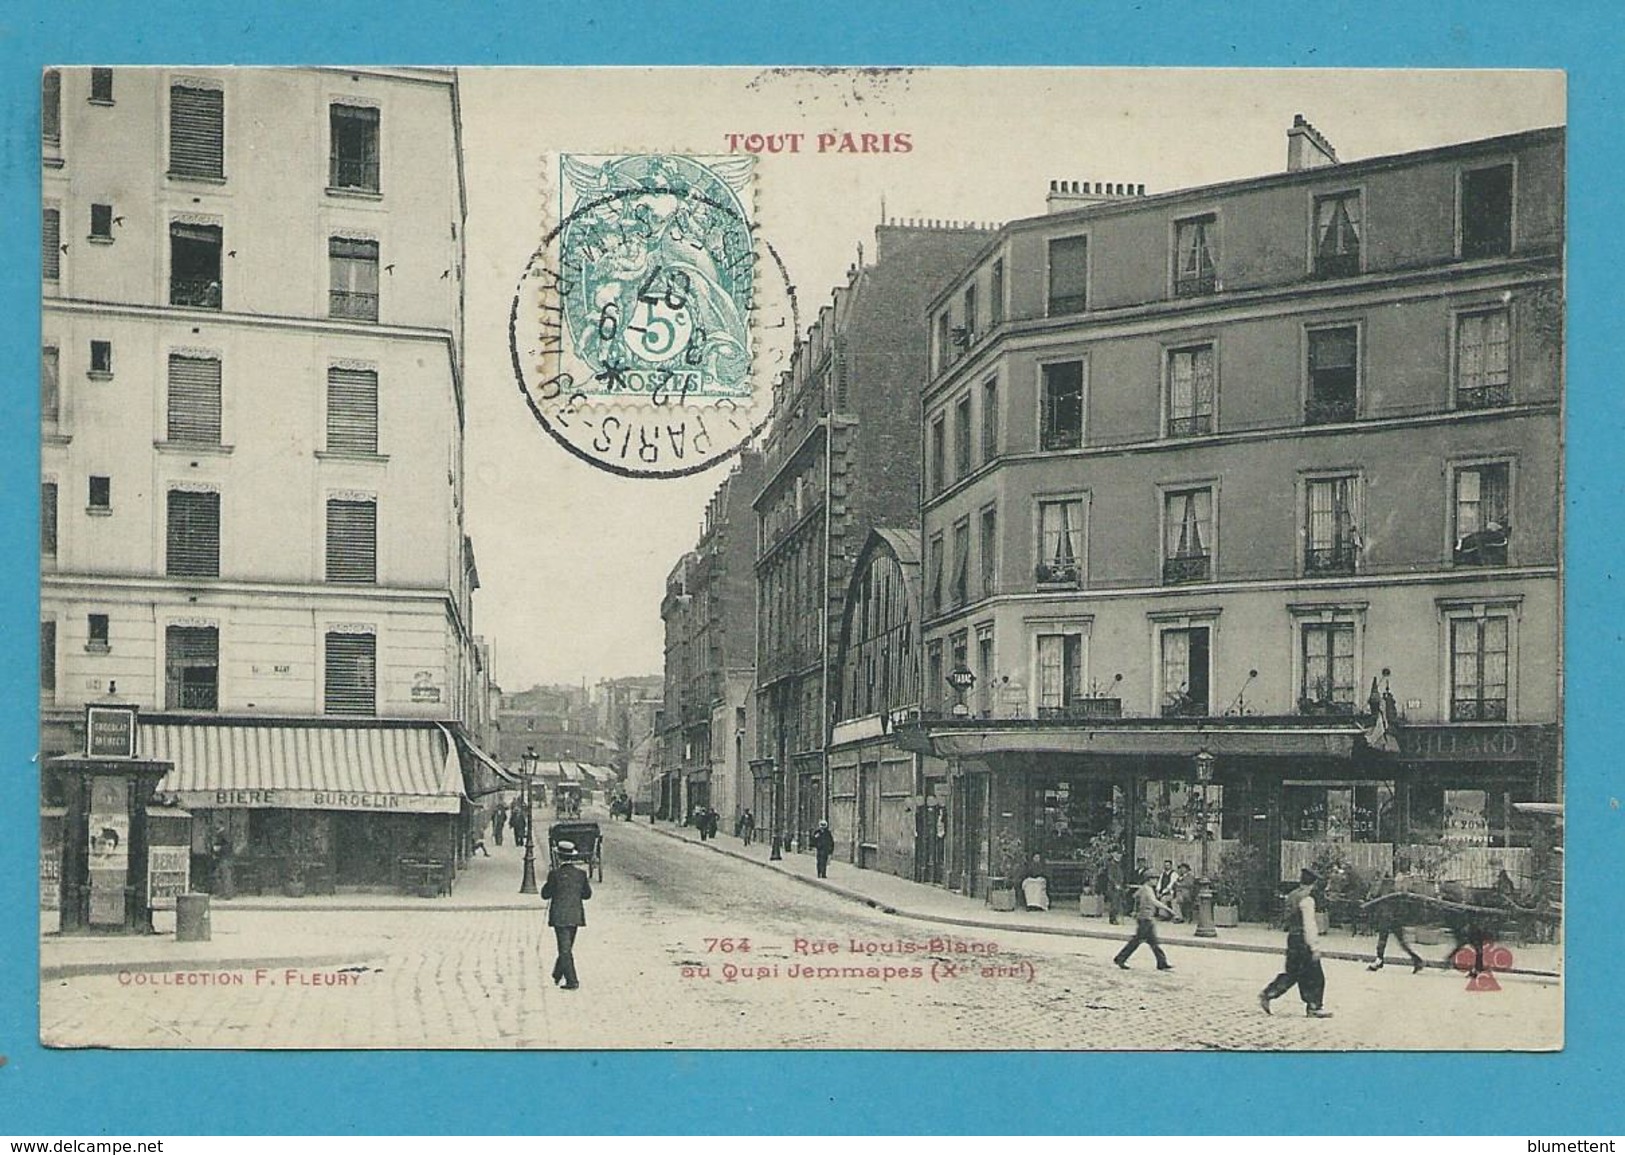 CPA TOUT PARIS 764 - Rue Louis-Blanc (Xème Arrt.) Edition FLEURY - District 10